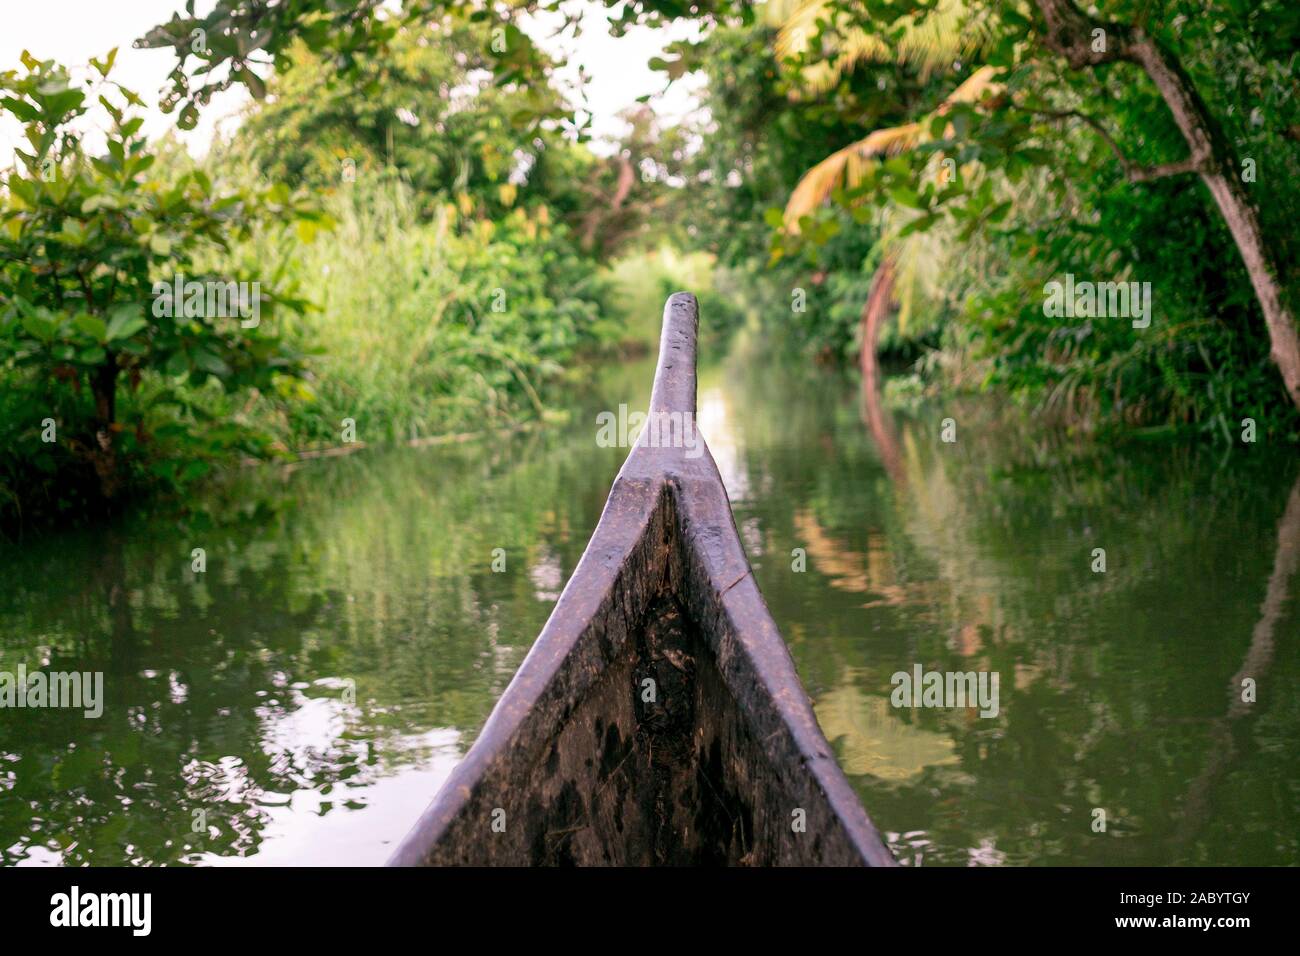 Reiten Holz Fischerboot in Kerala backwaters Dorf Wasser Kanal unter Palmen, einem unberührten natürlichen Umgebung während der Monsunzeit Stockfoto